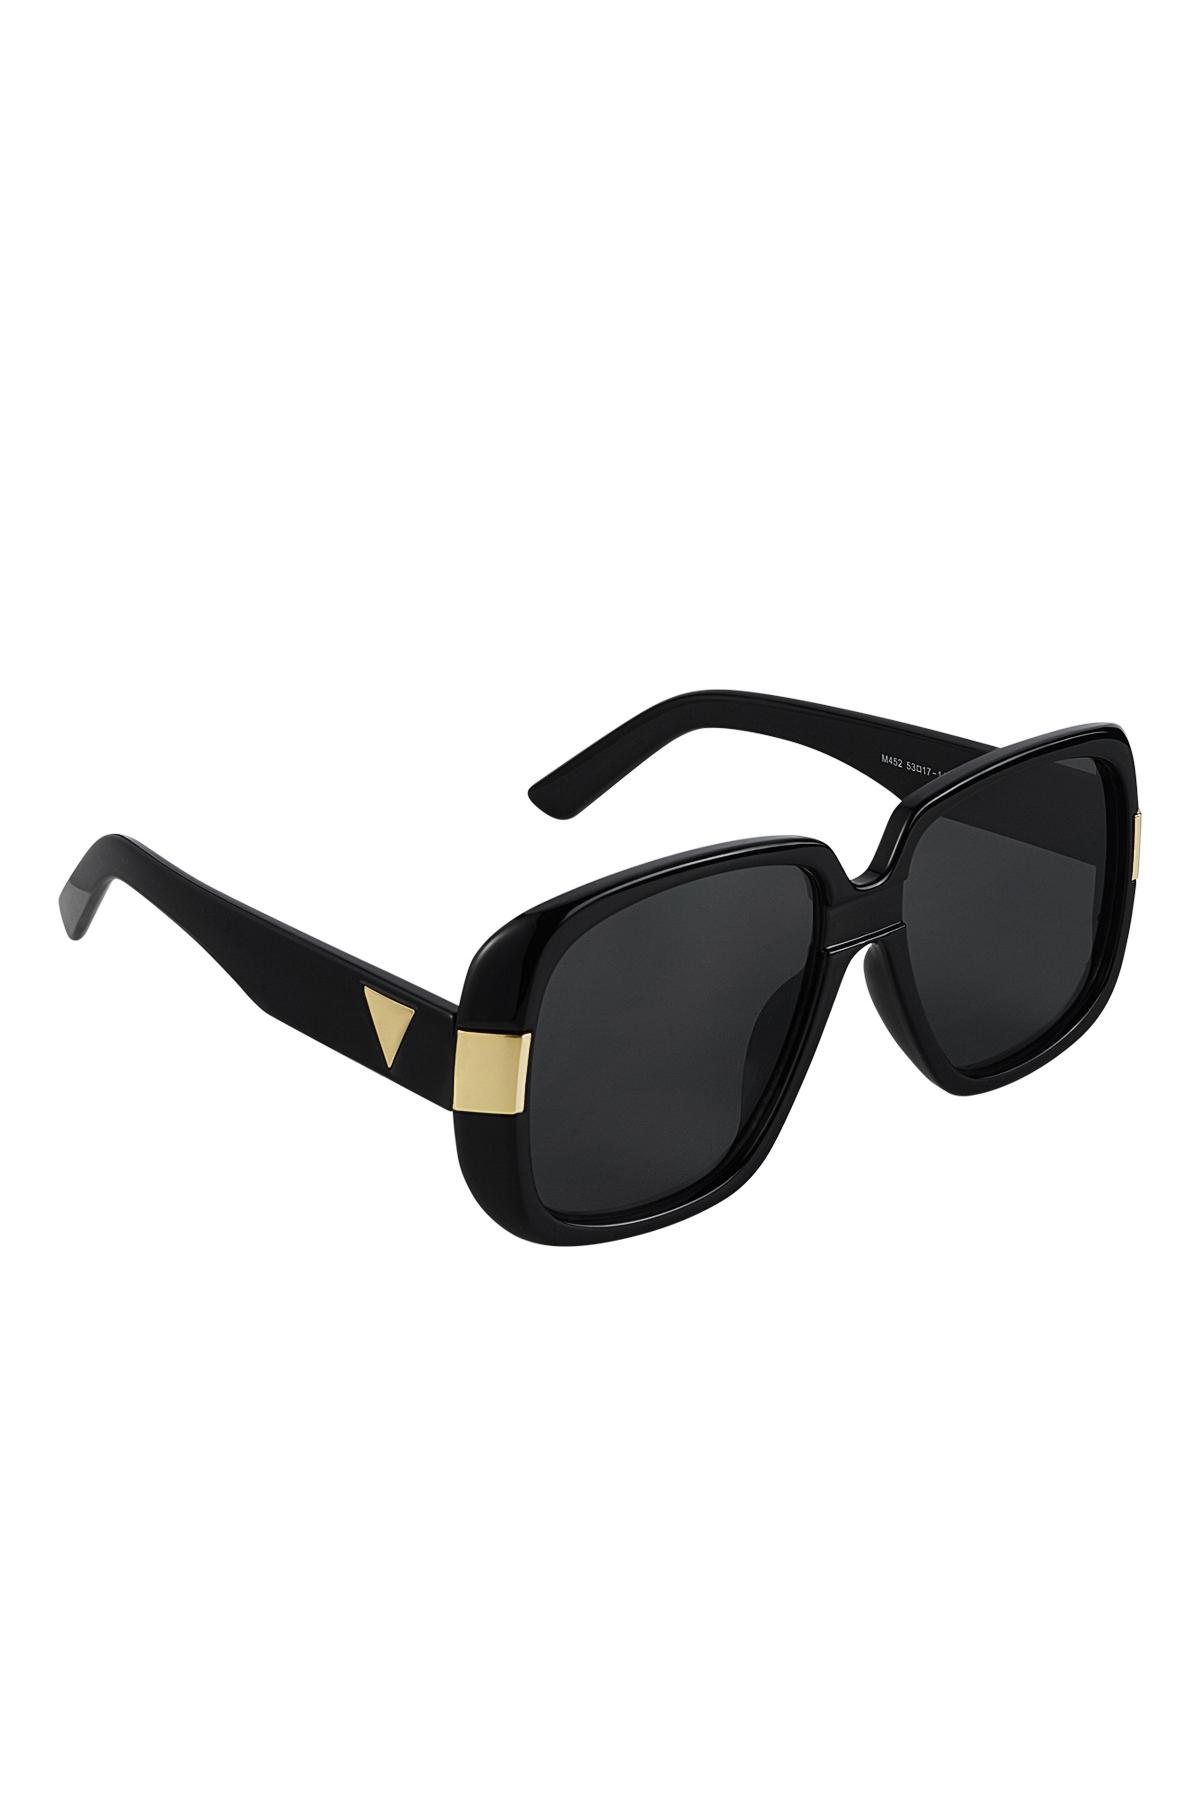 Sonnenbrille Basic mit goldenen Details Schwarz PC One size